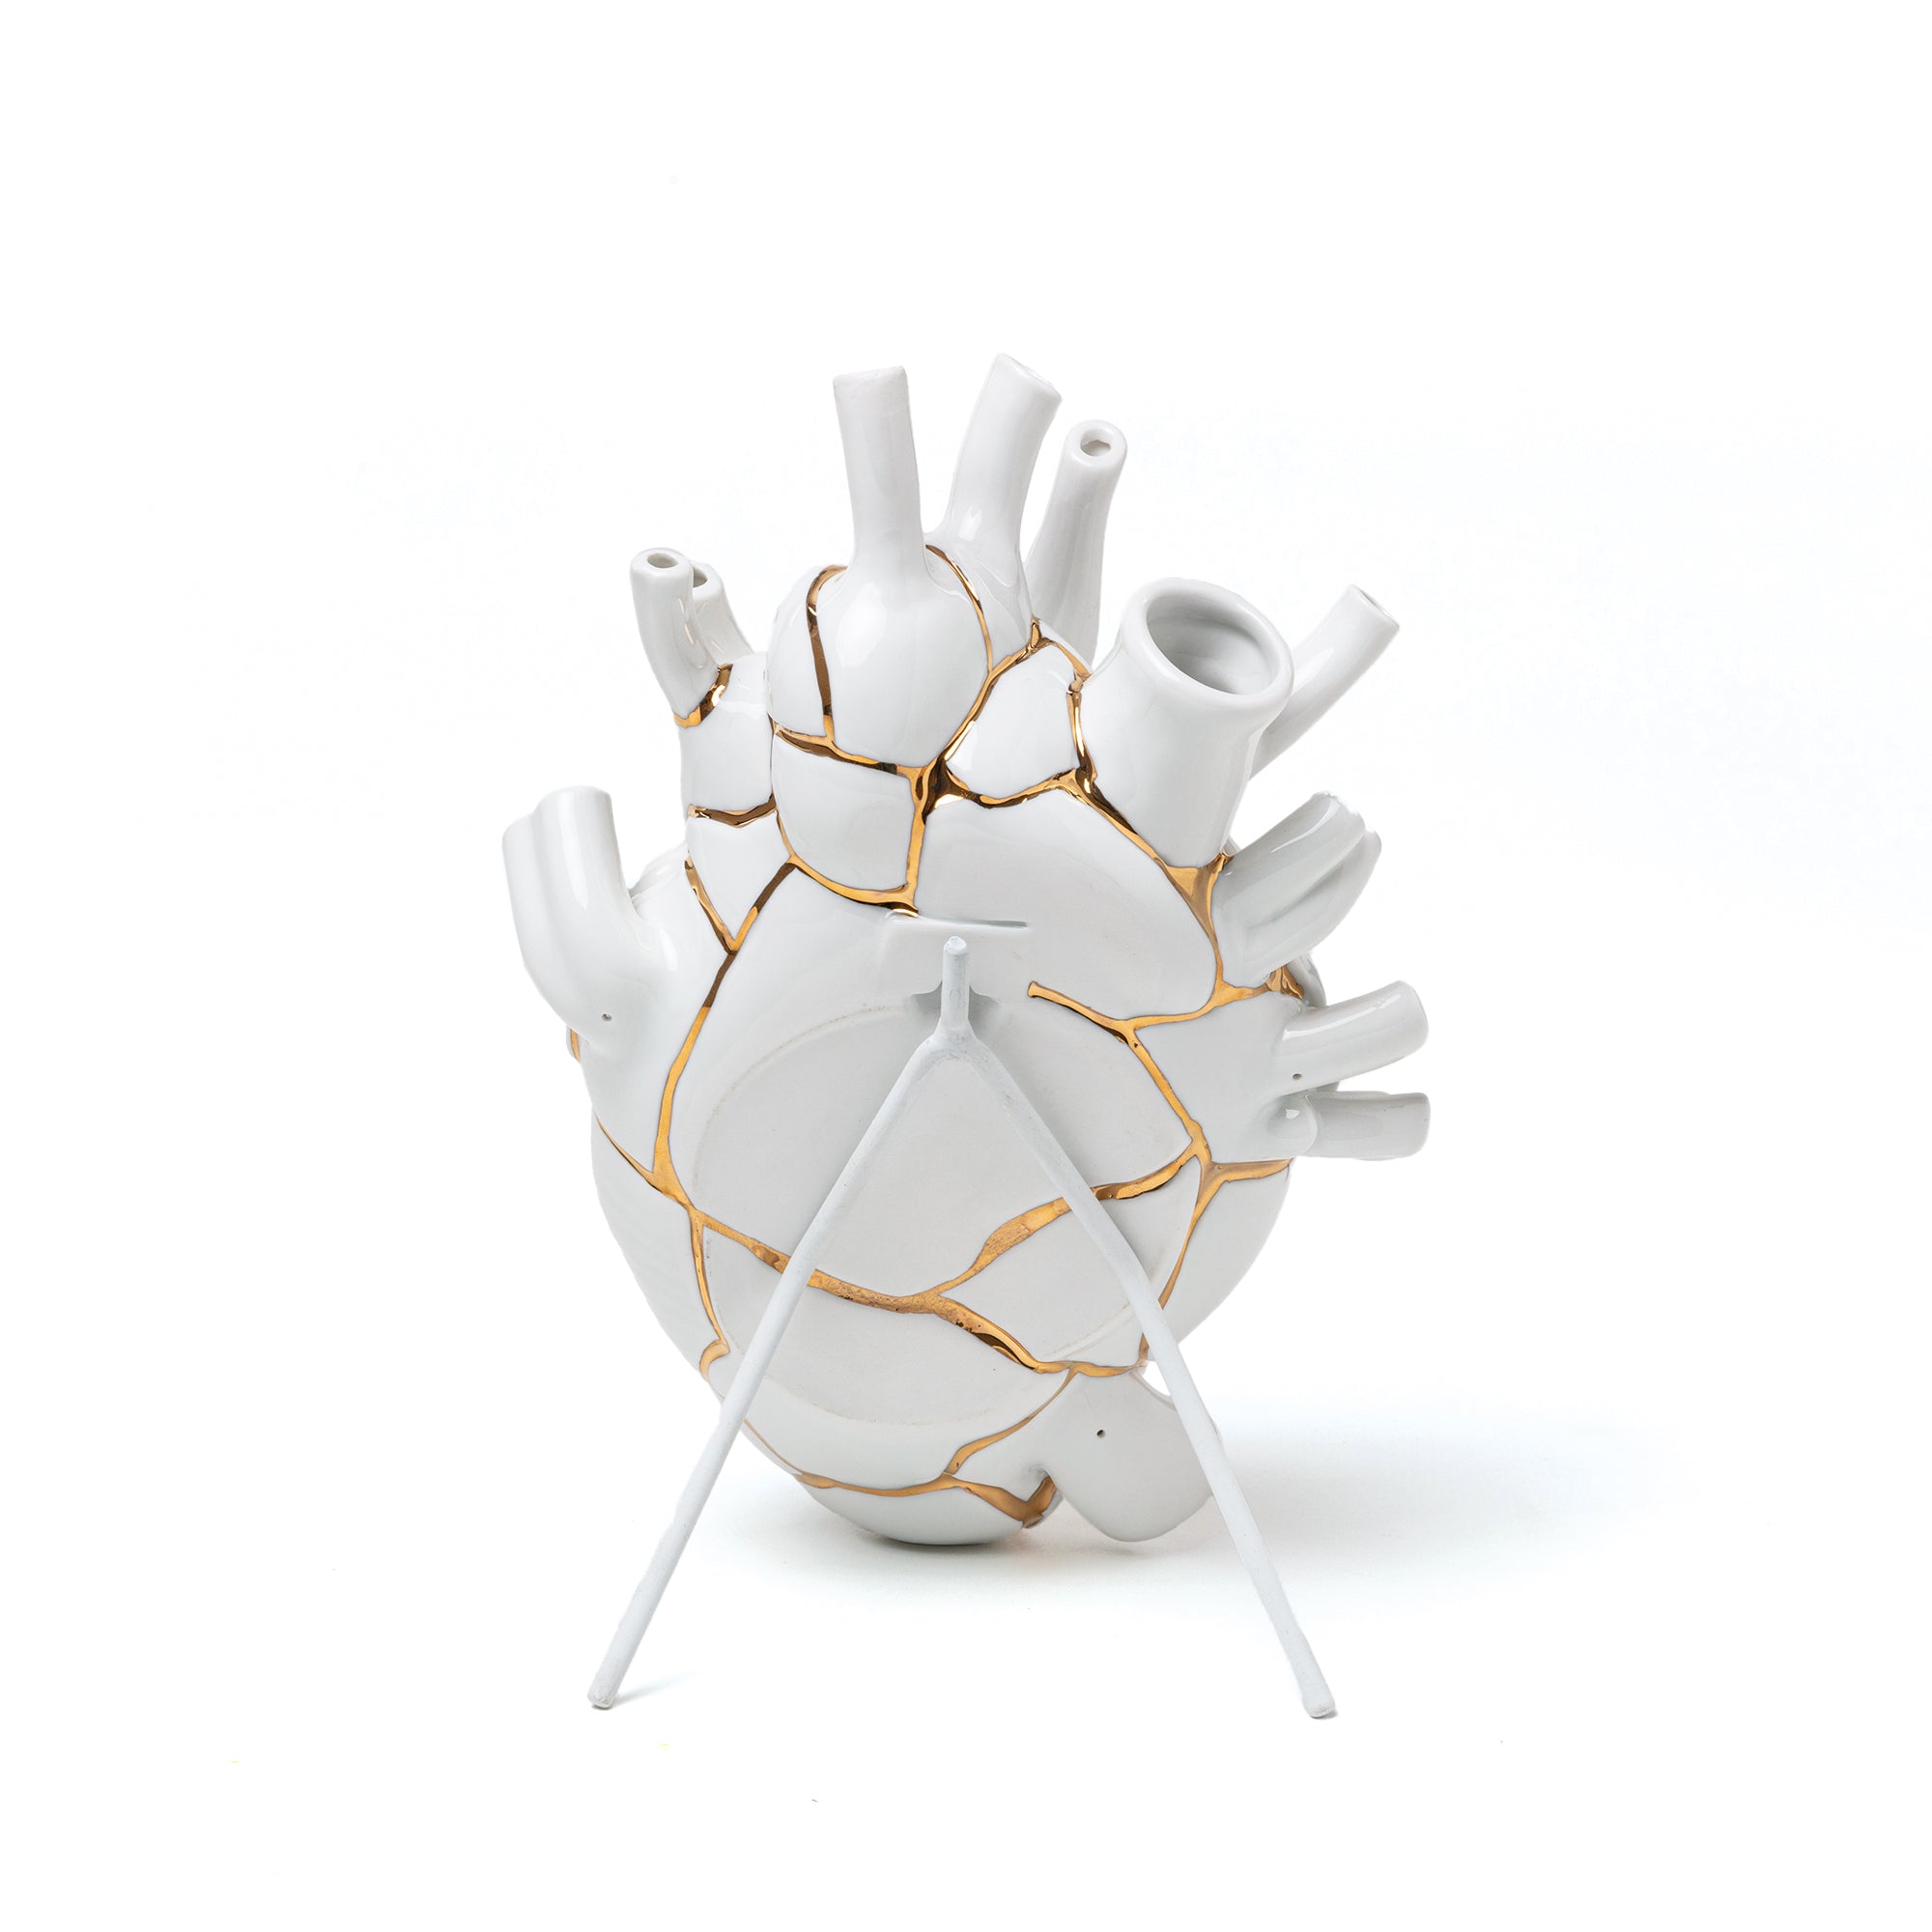 Seletti Love in Bloom Heart-shaped vase